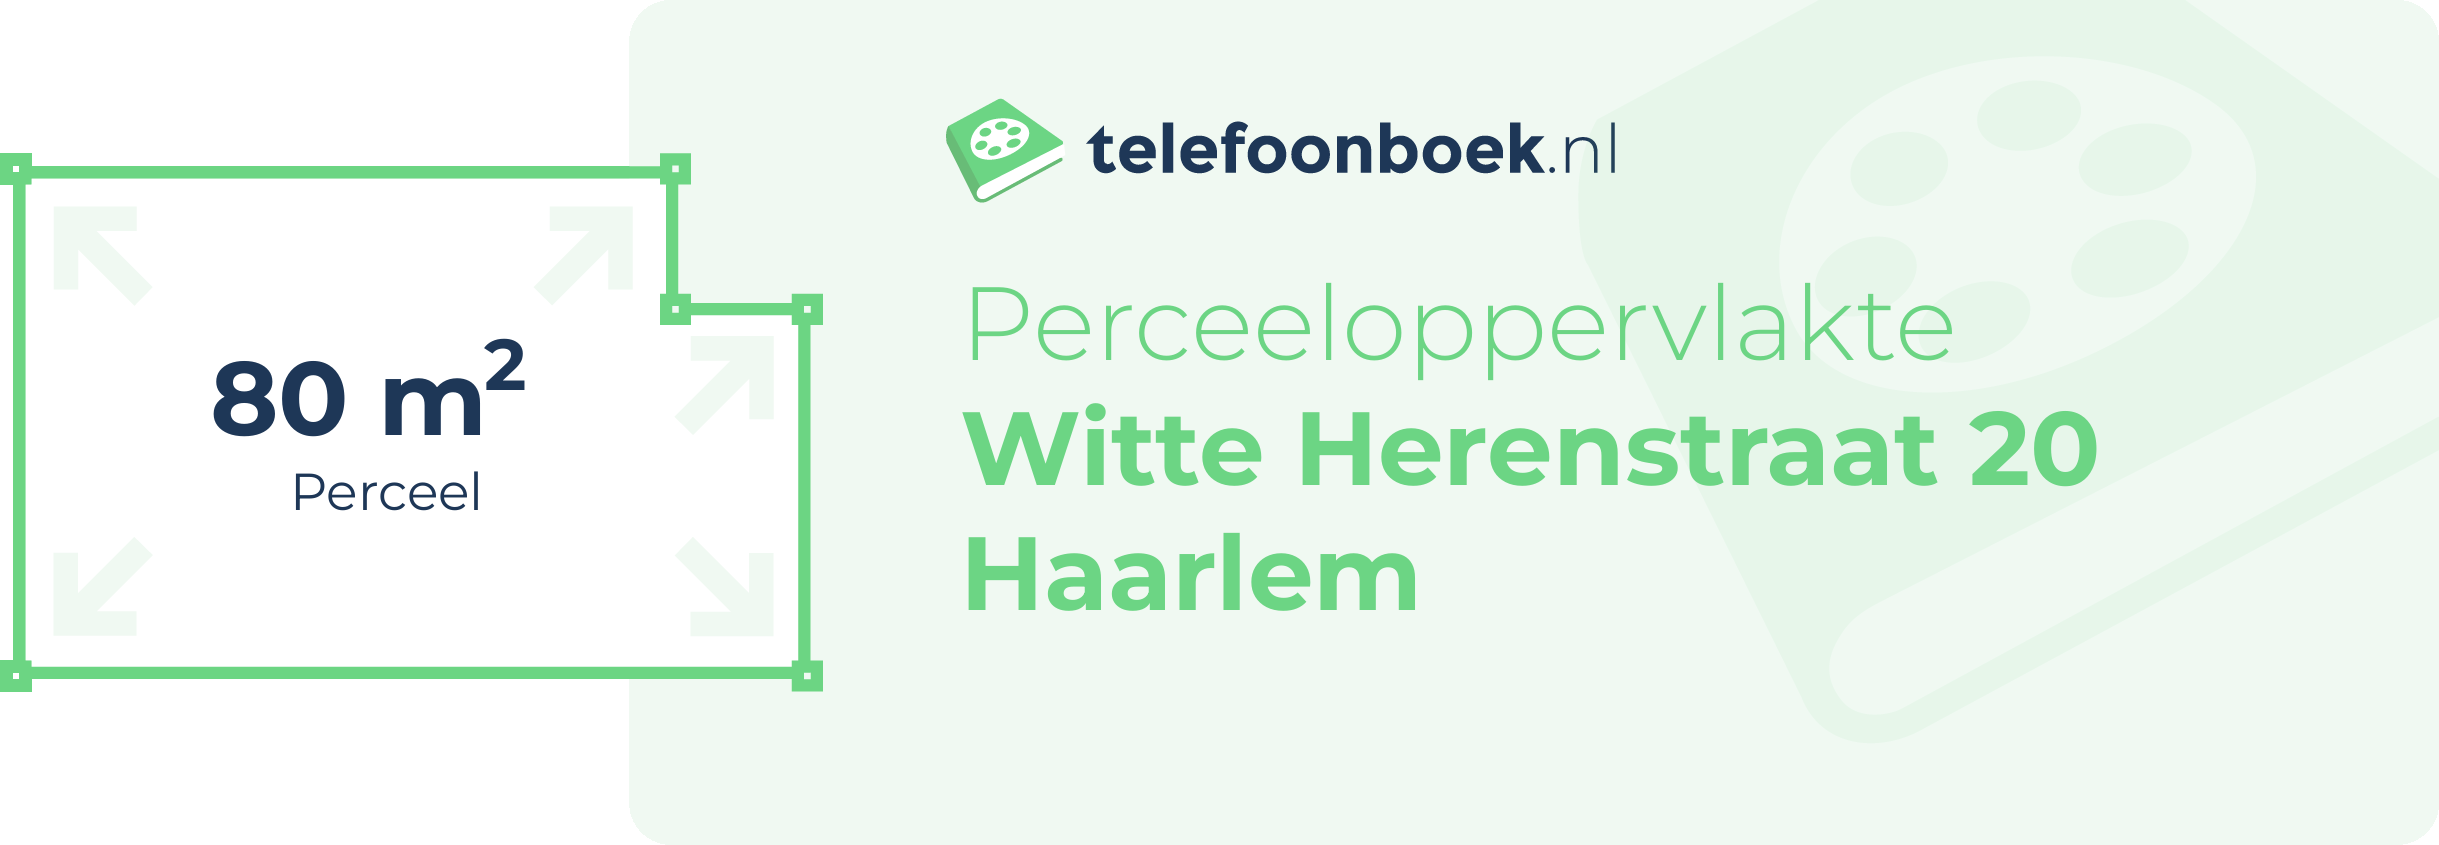 Perceeloppervlakte Witte Herenstraat 20 Haarlem